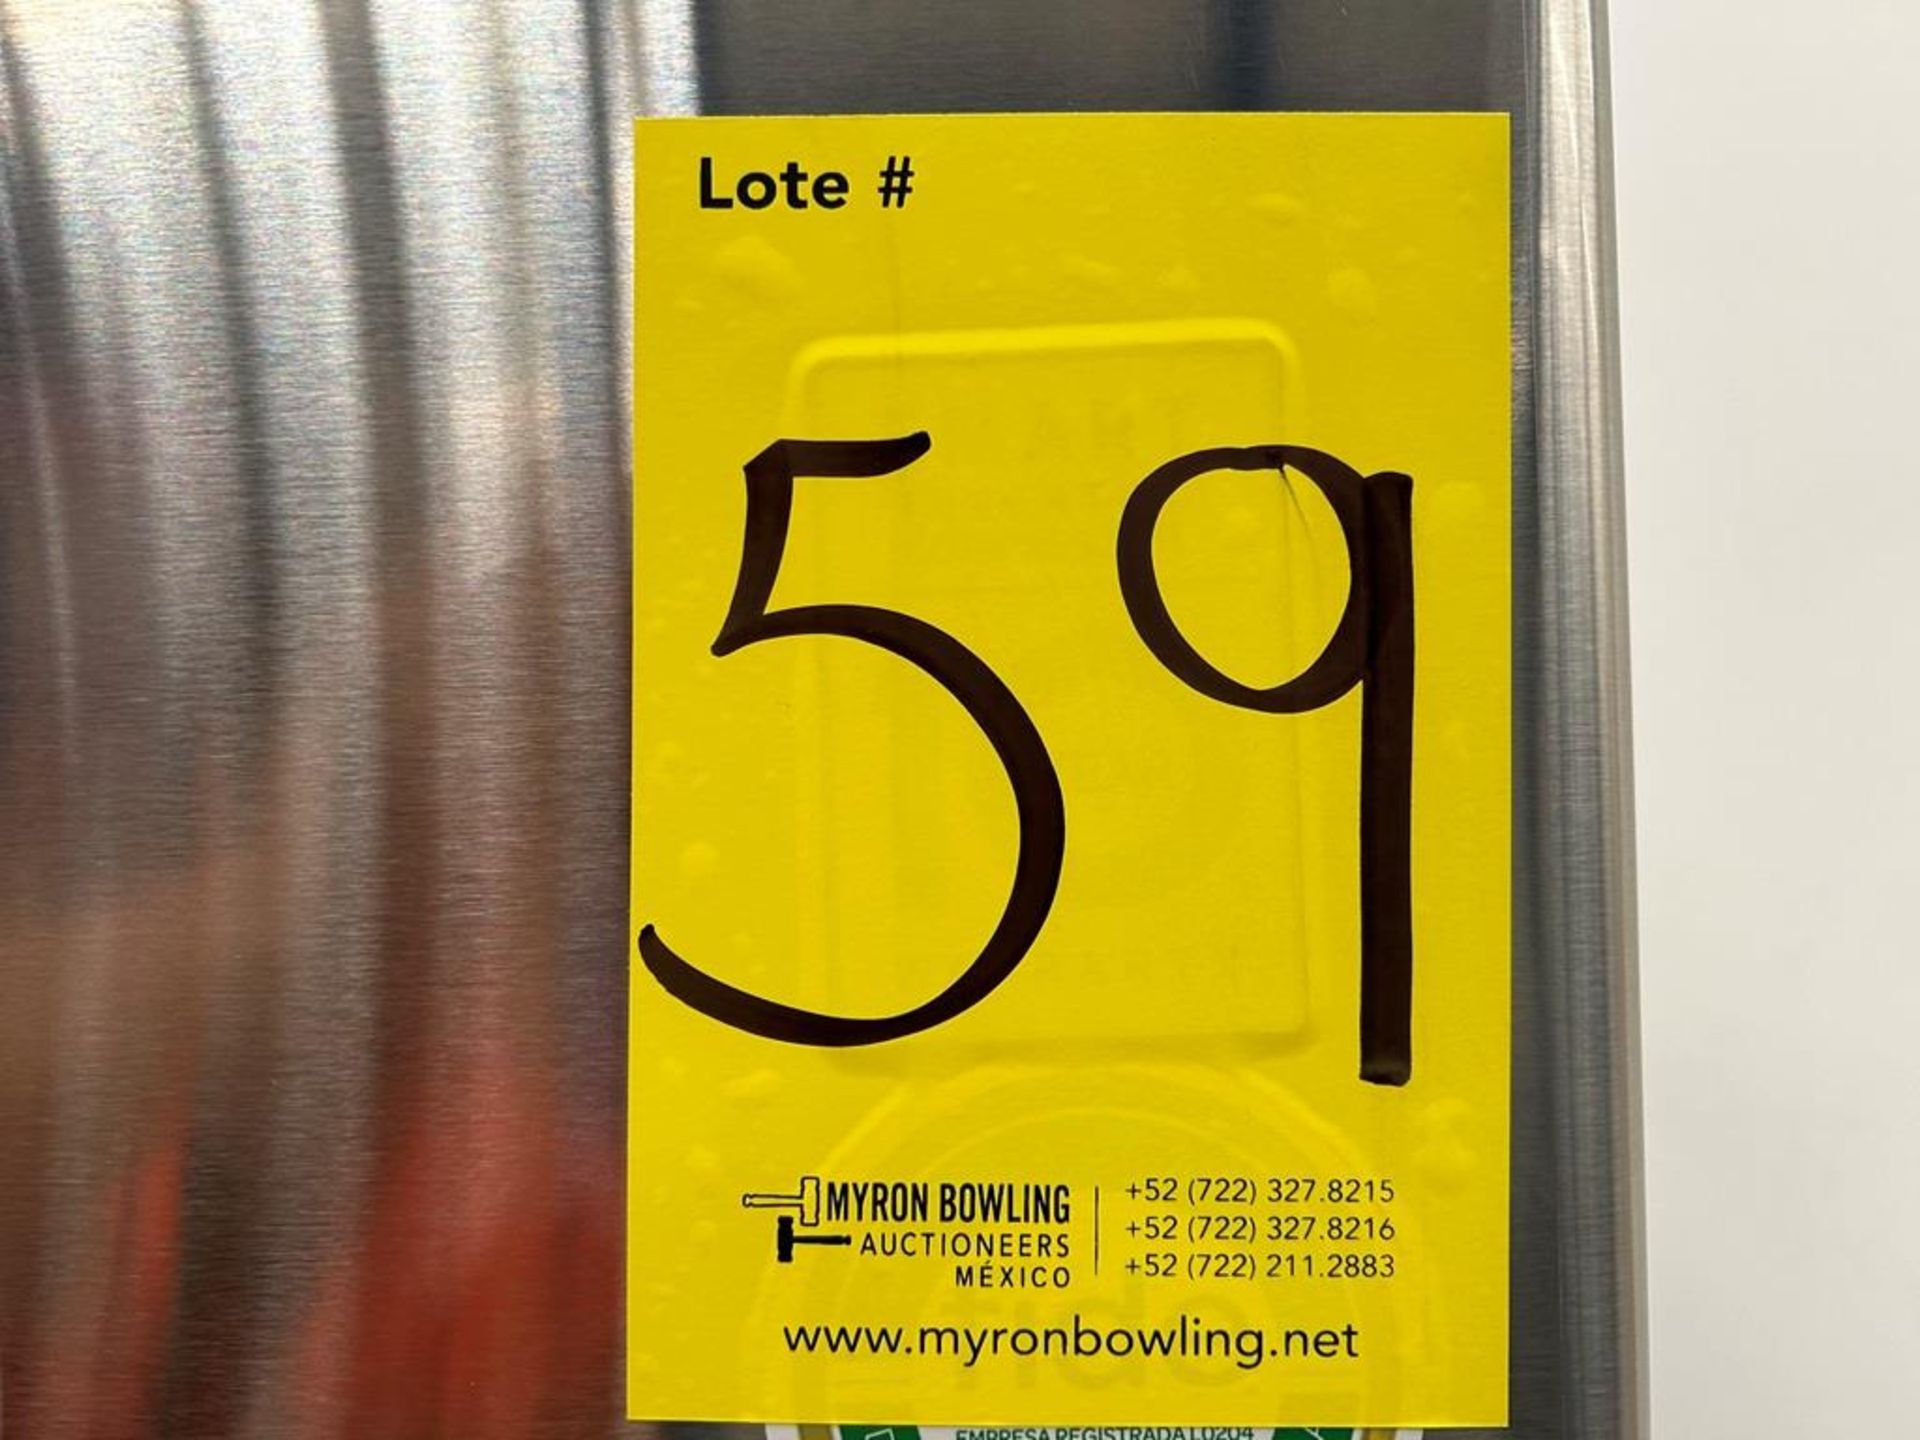 (NUEVO) Refrigerador Marca LG, Modelo LT57BPSX, Serie 1U863, Color GRIS - Image 11 of 11